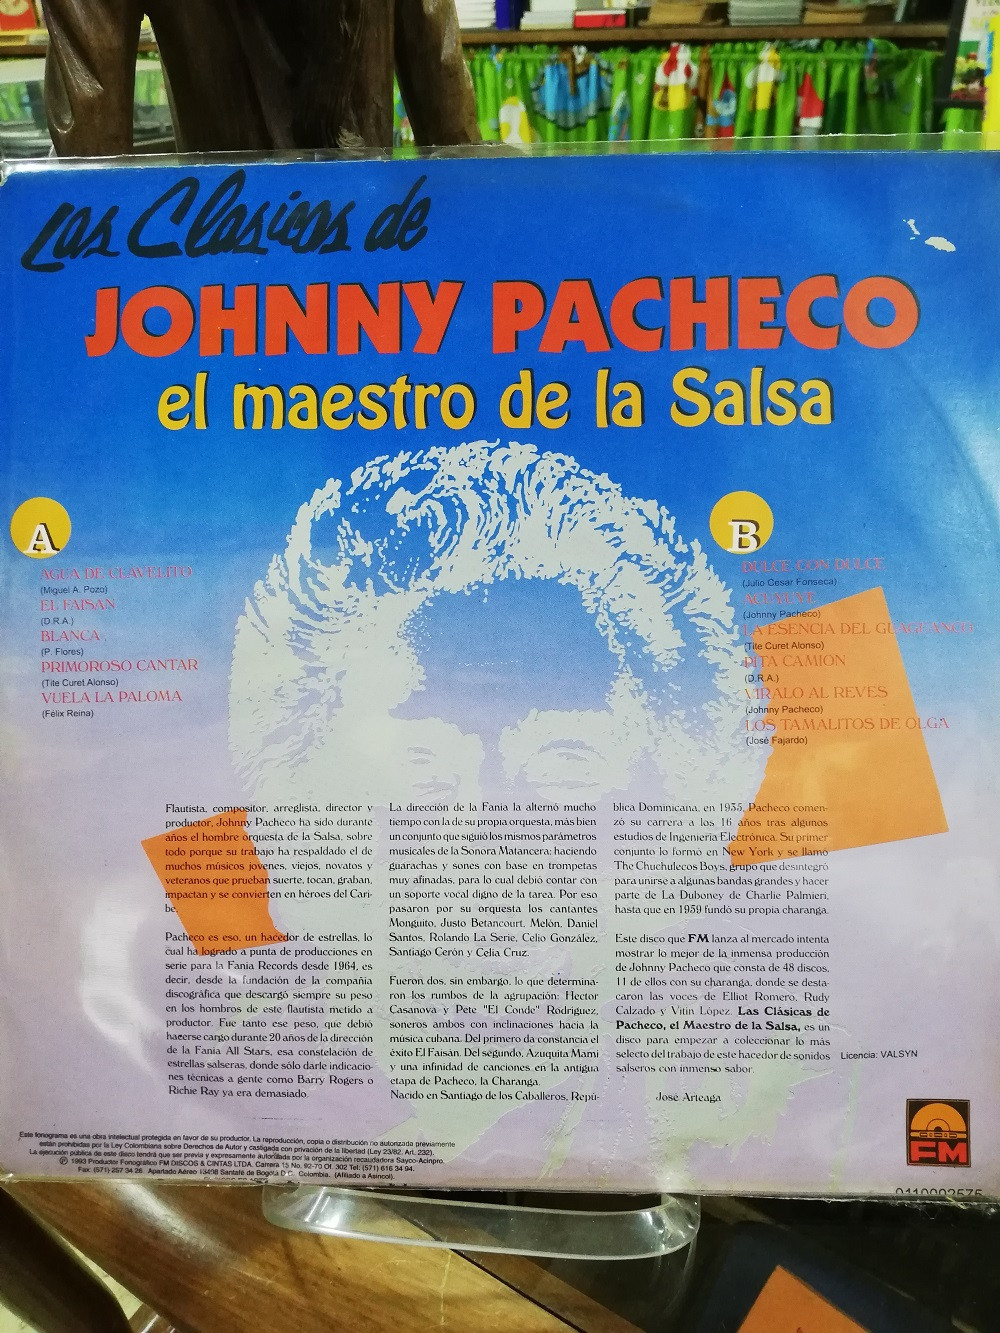 Imagen LP JOHNNY PACHECO - LAS CLÁSICAS JOHNNY PACHECO, EL MAESTRO DE LA SALSA 2